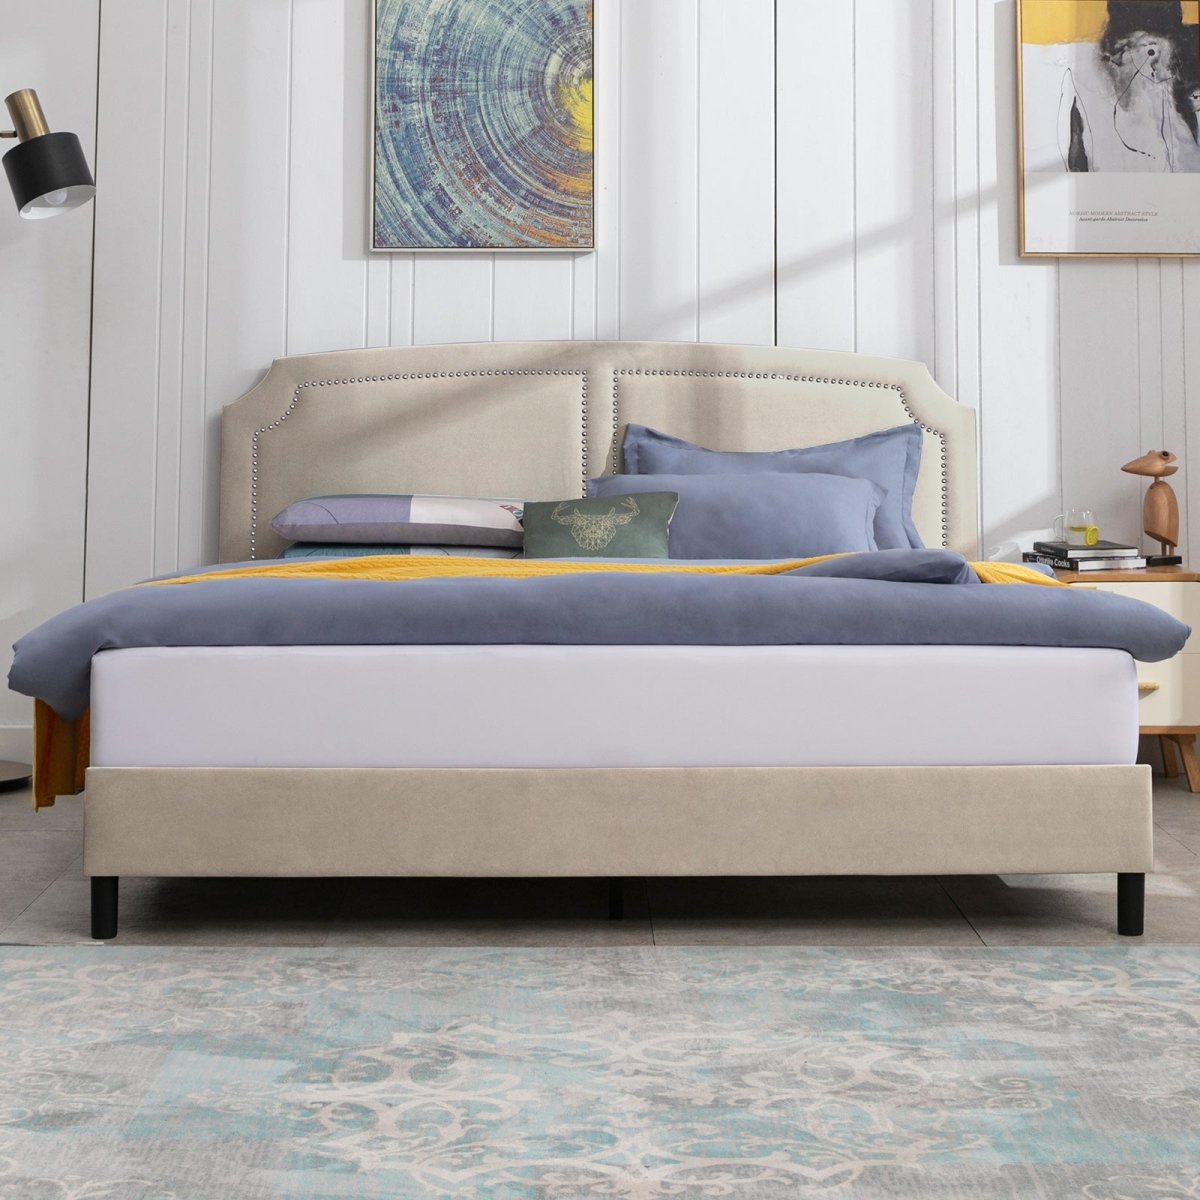 Upholstered Bed Frame | Velvet Platform Bed Frame with Headboard and Wooden Slats No Box Spring Required - Mjkonebed frame